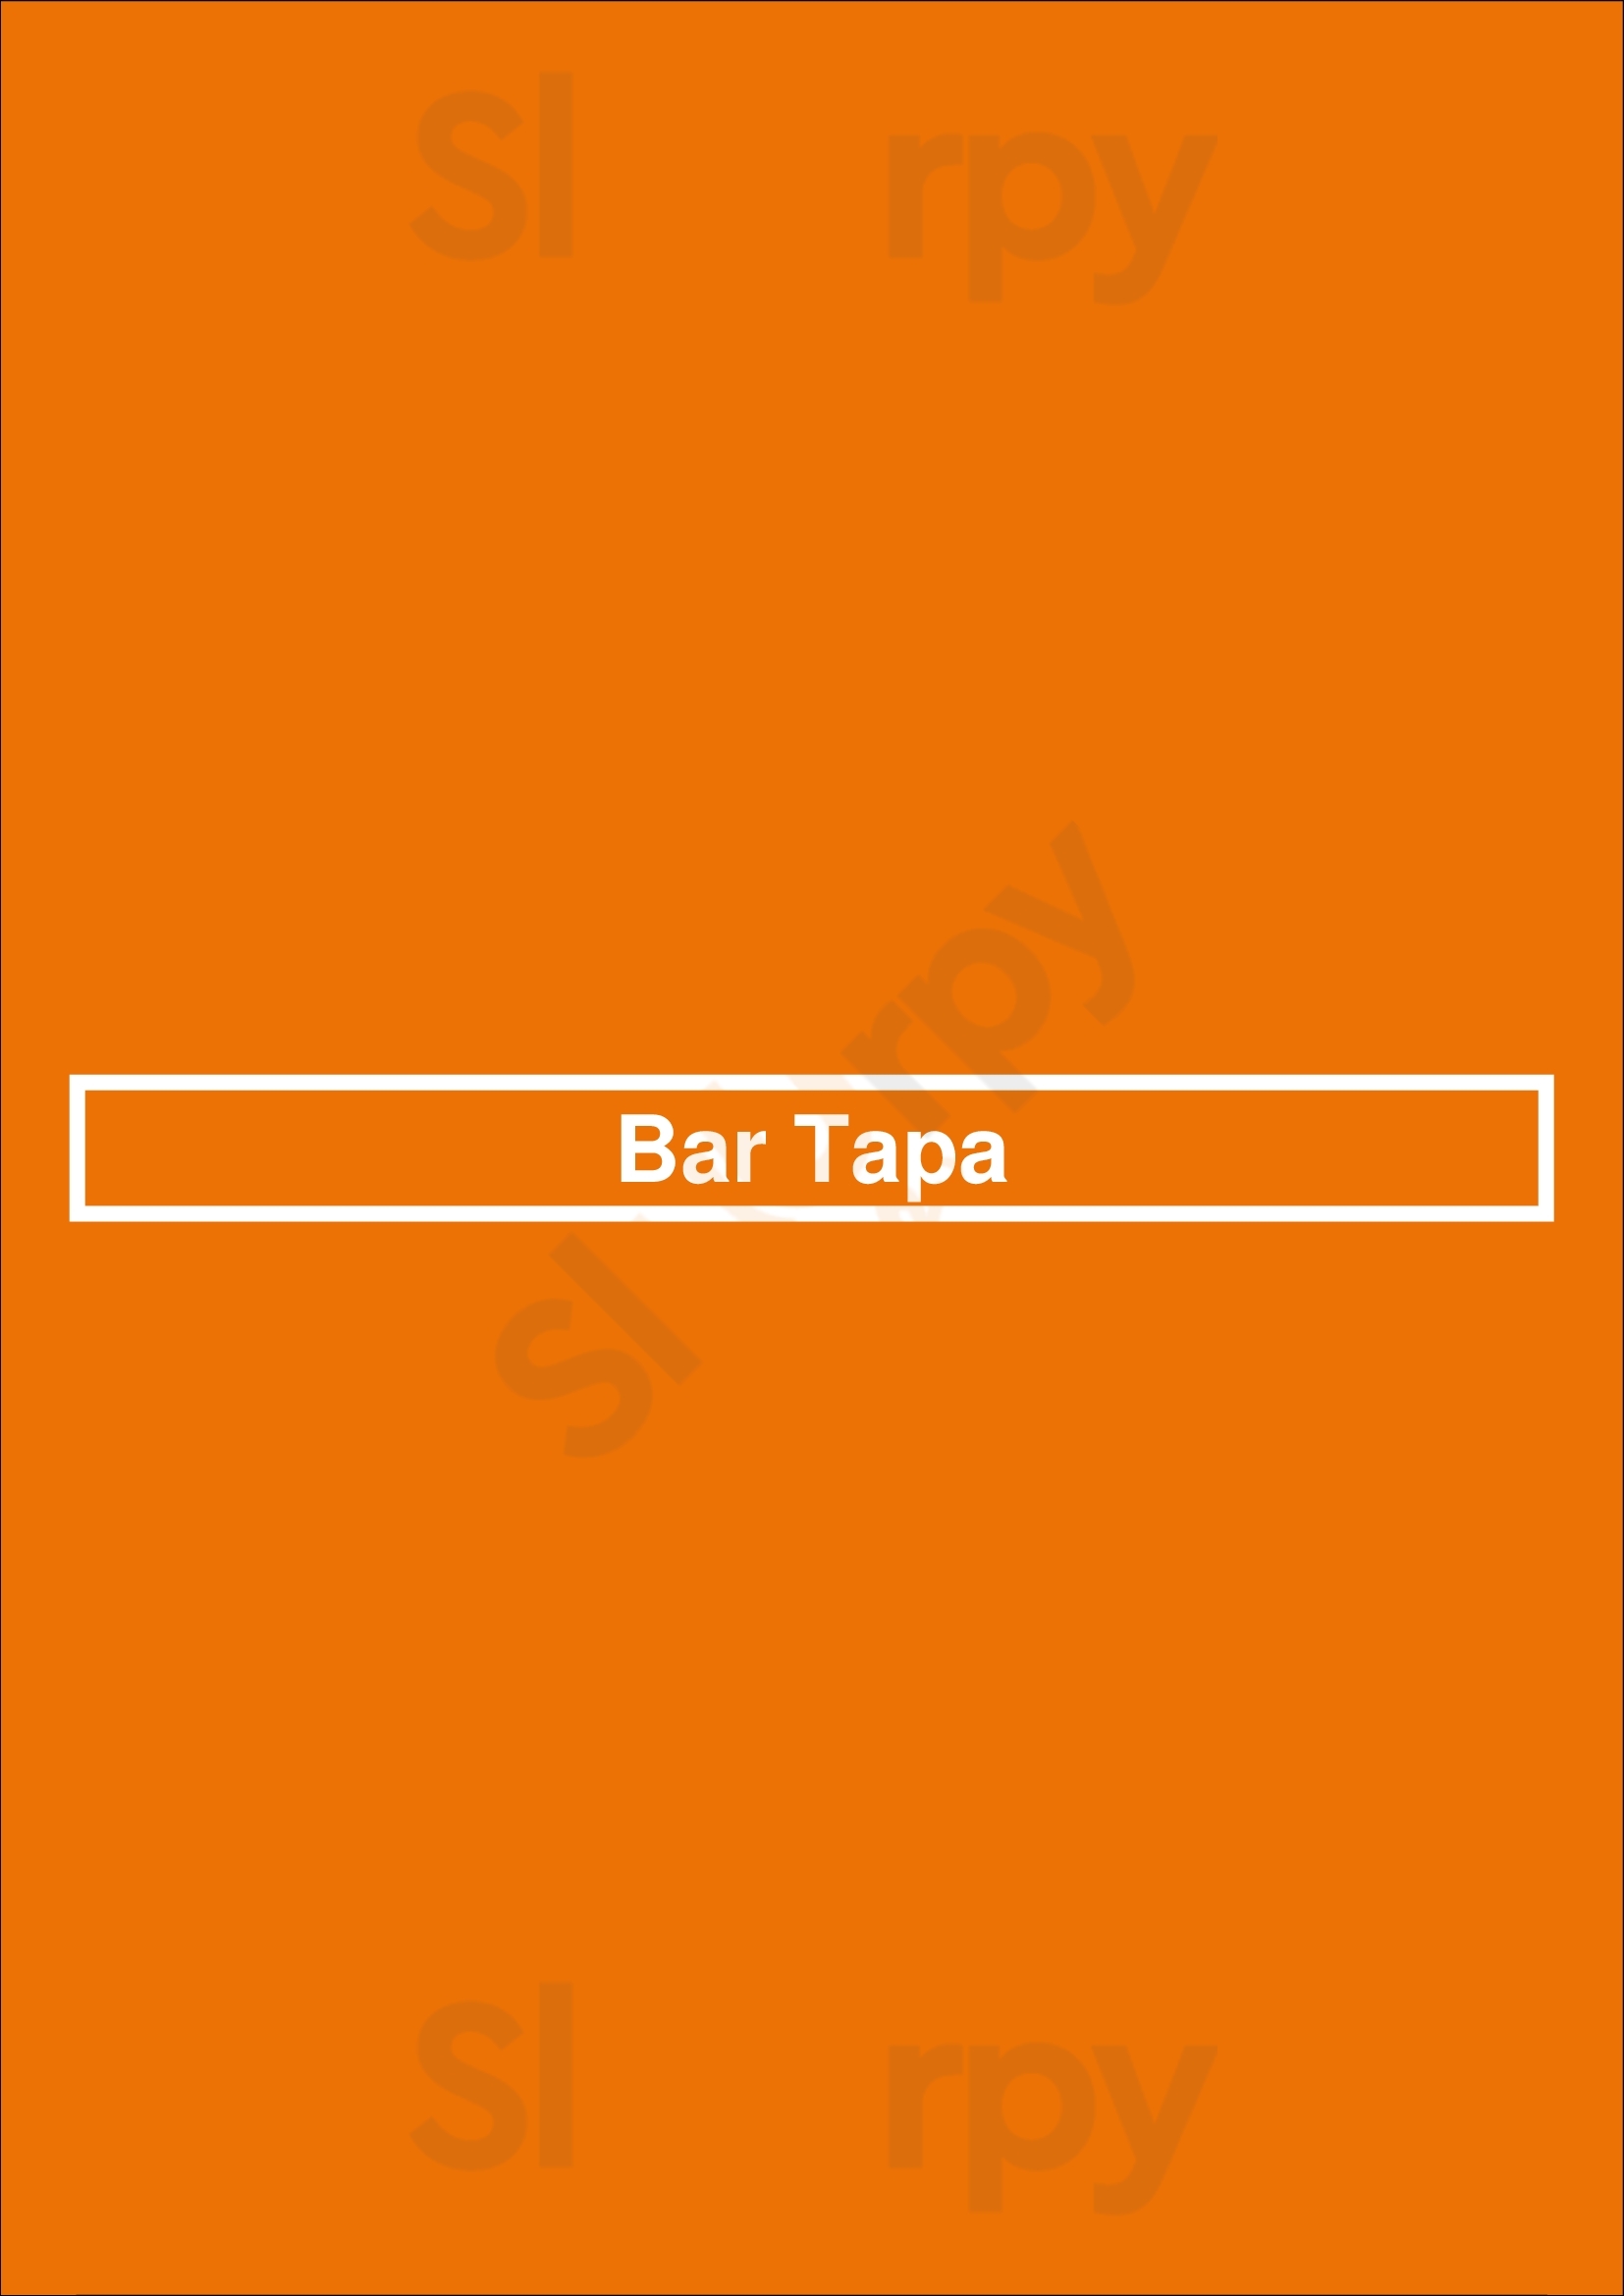 Bar Tapa Sydney Menu - 1